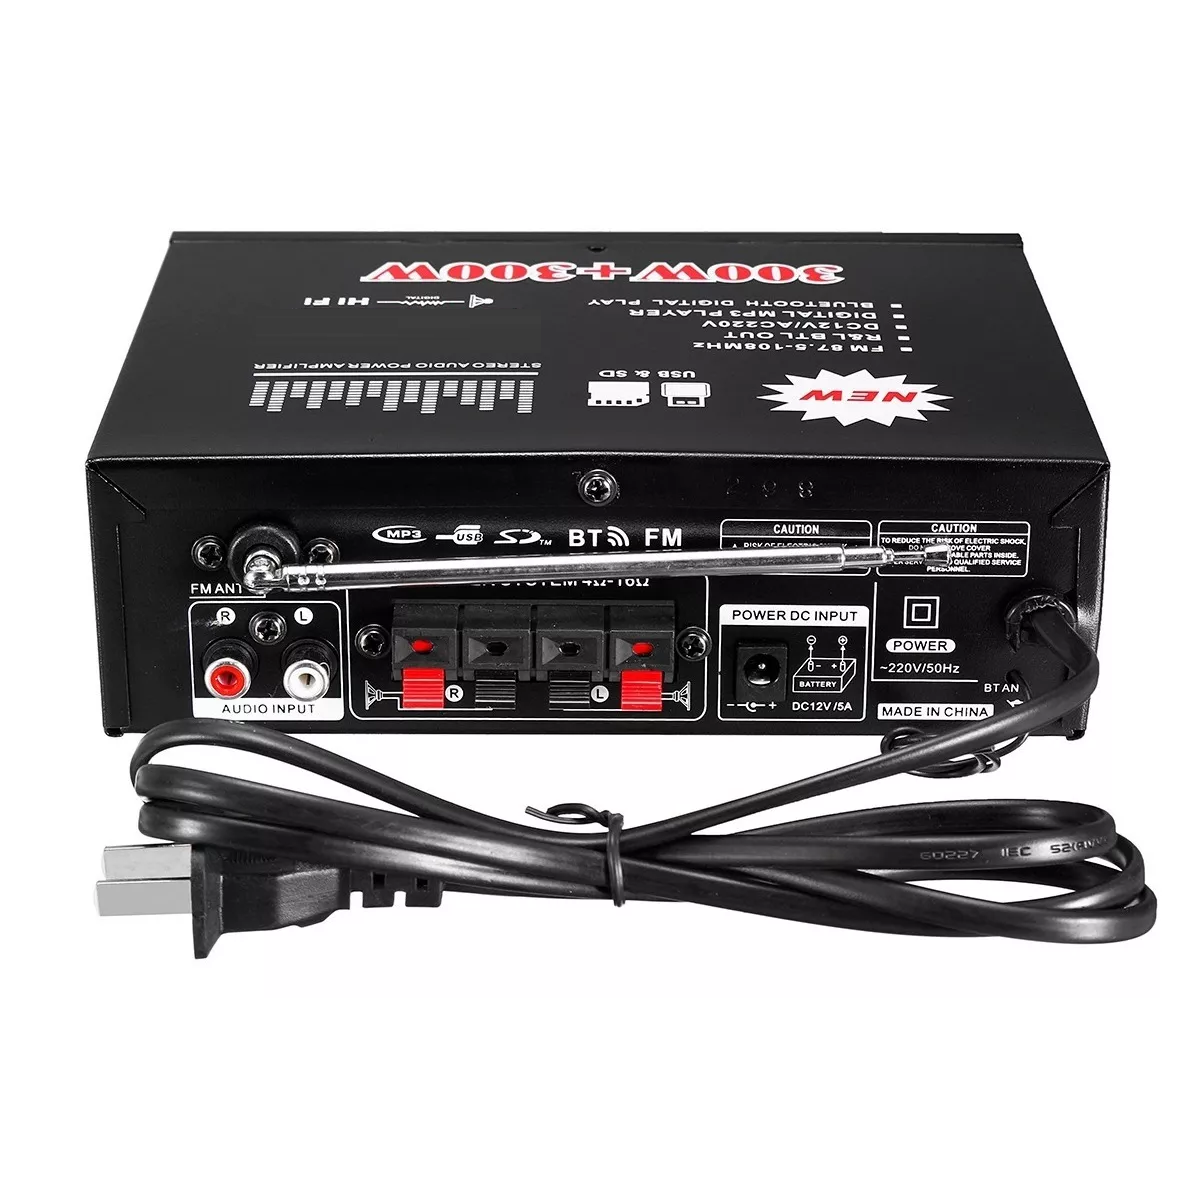 MINI Amplificador De Potencia De 400W, Canal 2,0, Estéreo HIFI,  Amplificador De Sonido De Audio, Agudos De Graves Para Sistema De Sonido De  Cine En Ca